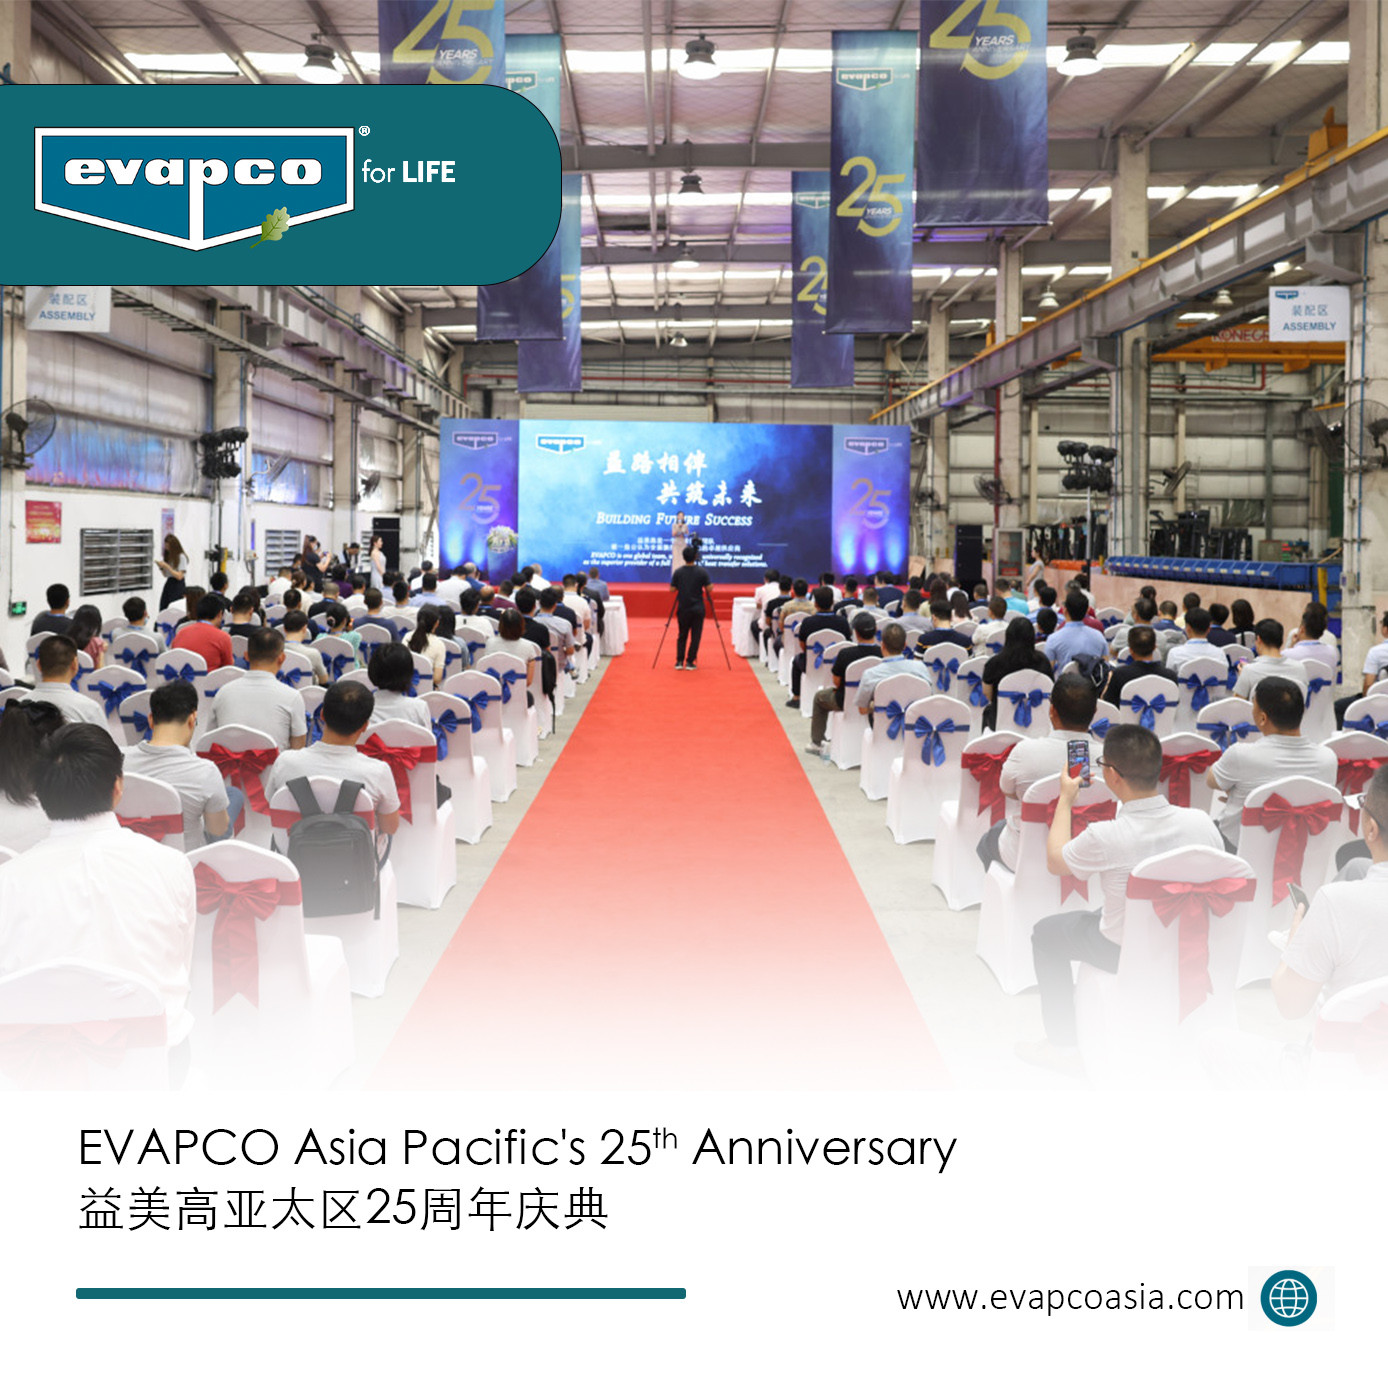 EVAPCO Asia Pacific's 25th Anniversary Ceremony